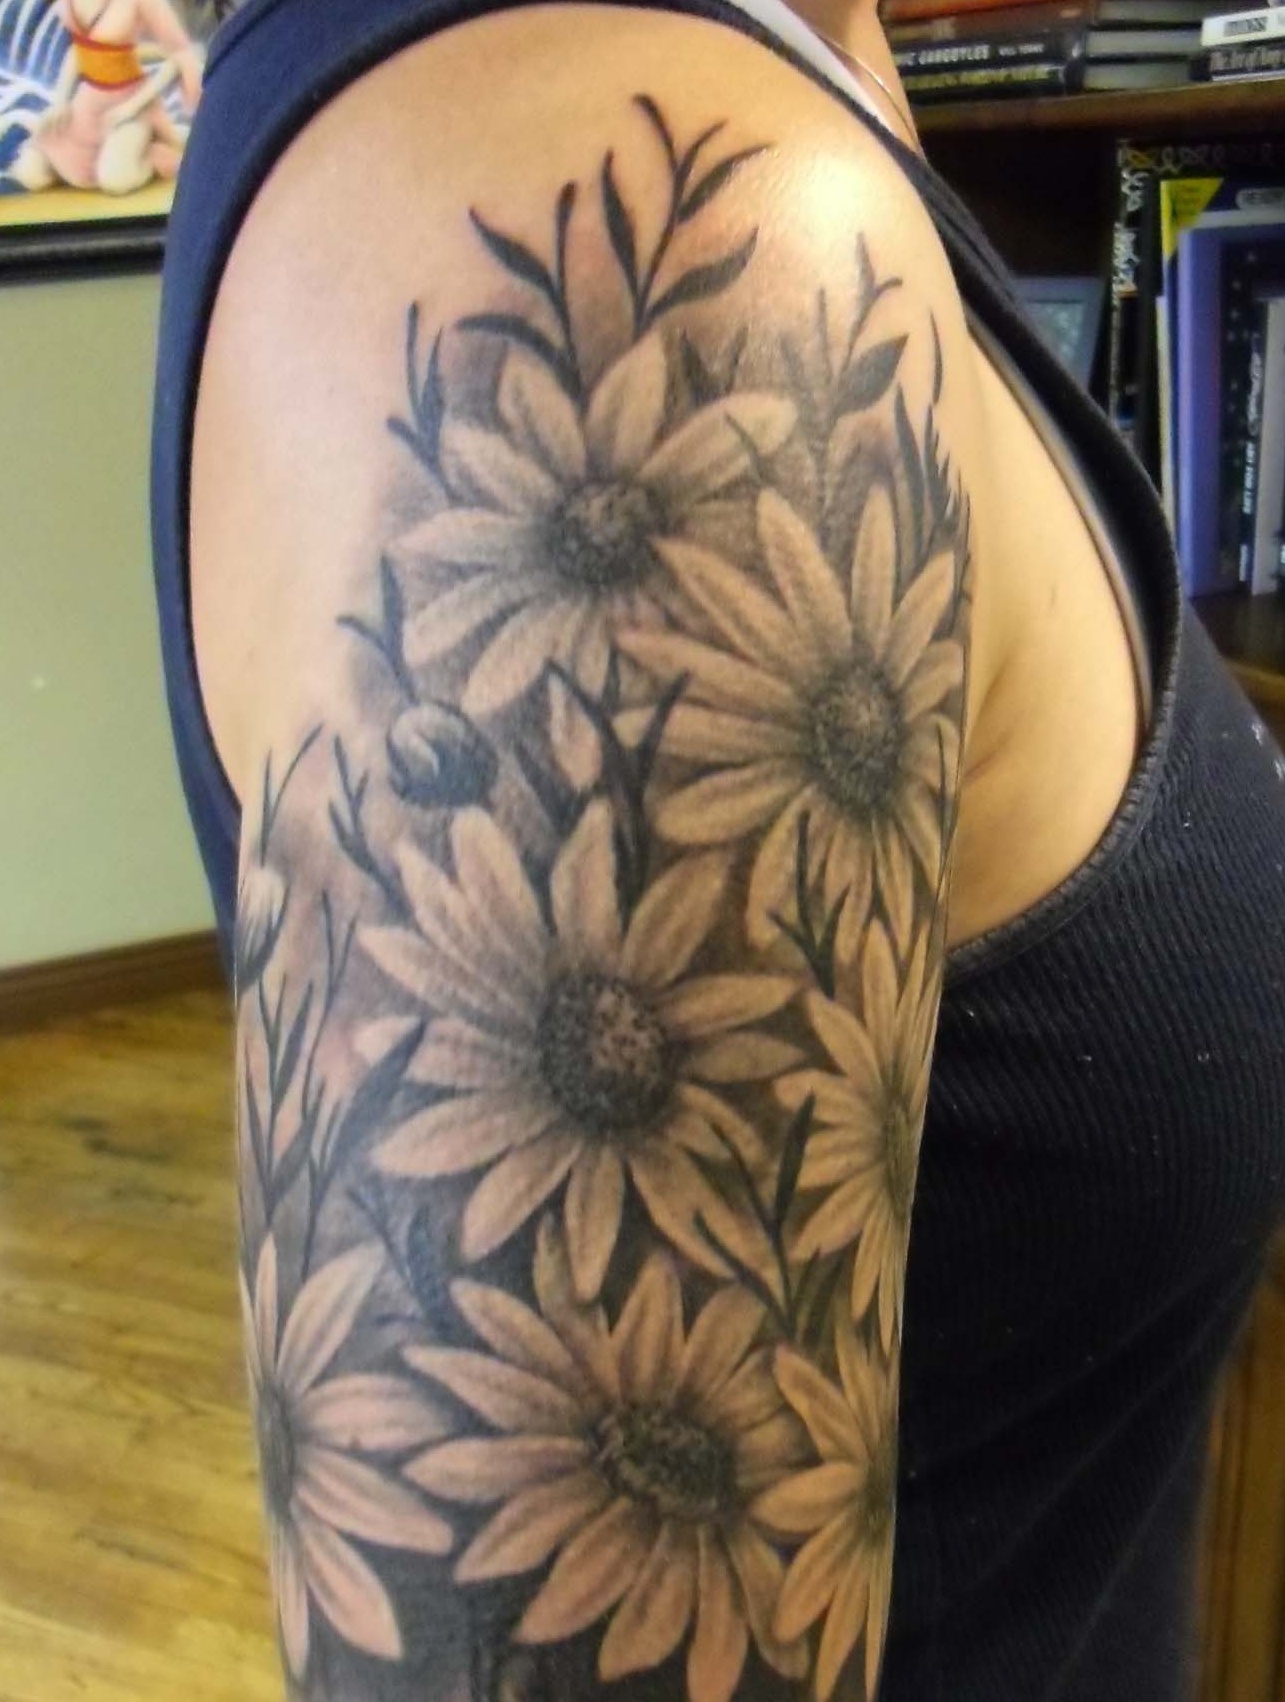 Sleeve-Sunflower-Tattoo-Design-Ideas-For-Women